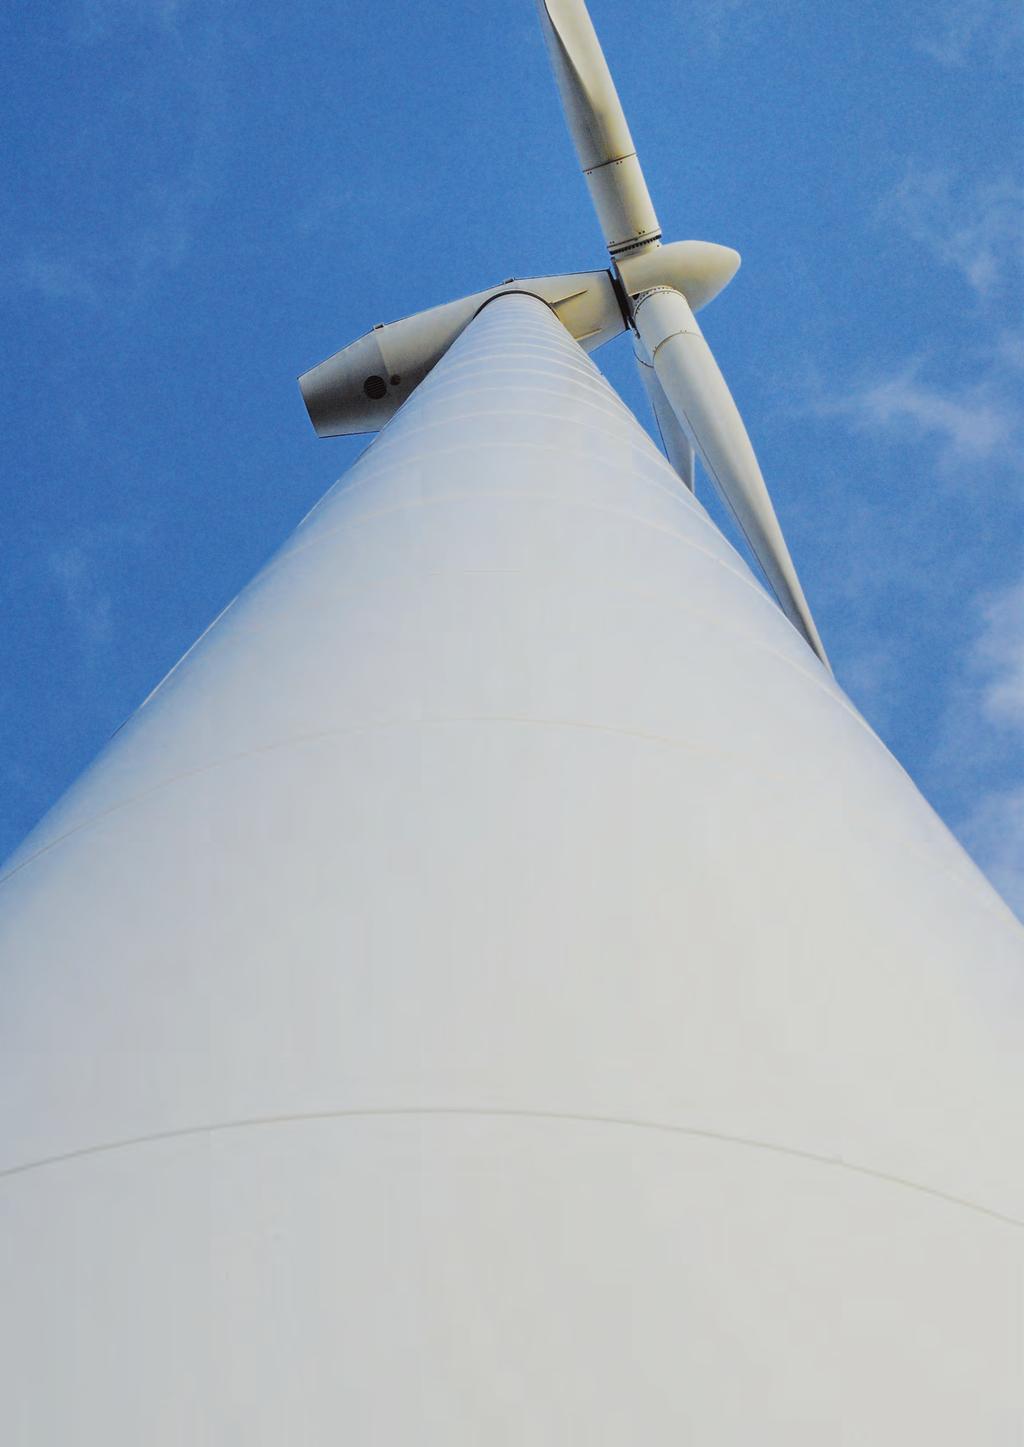 3. Juridische borging windbeleid Het nieuwe windbeleid wordt juridisch geborgd in een nieuw hoofdstuk Windenergie binnen de Verordening Fysieke Leefomgeving.